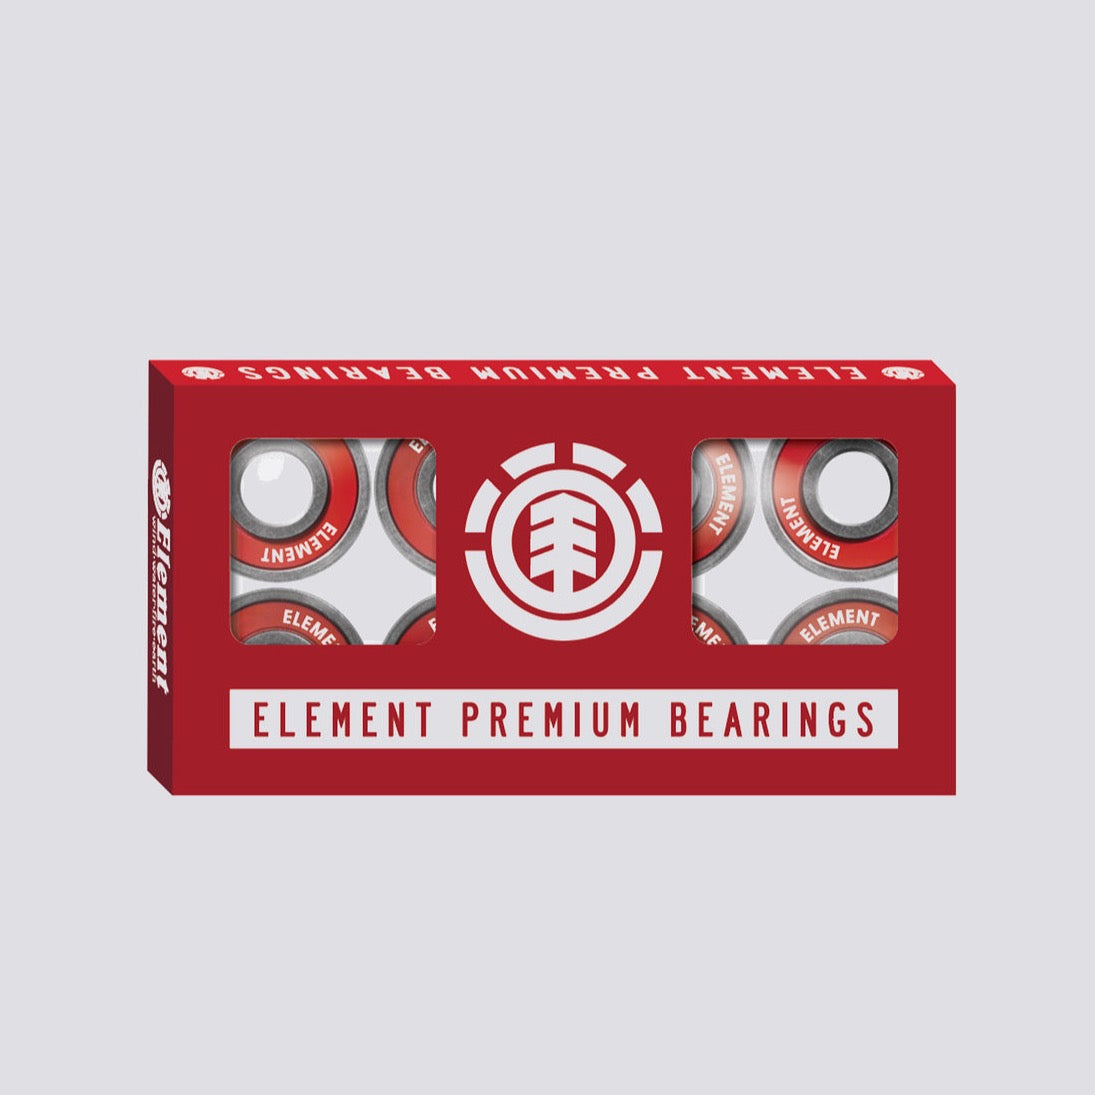 Element Premium Bearings